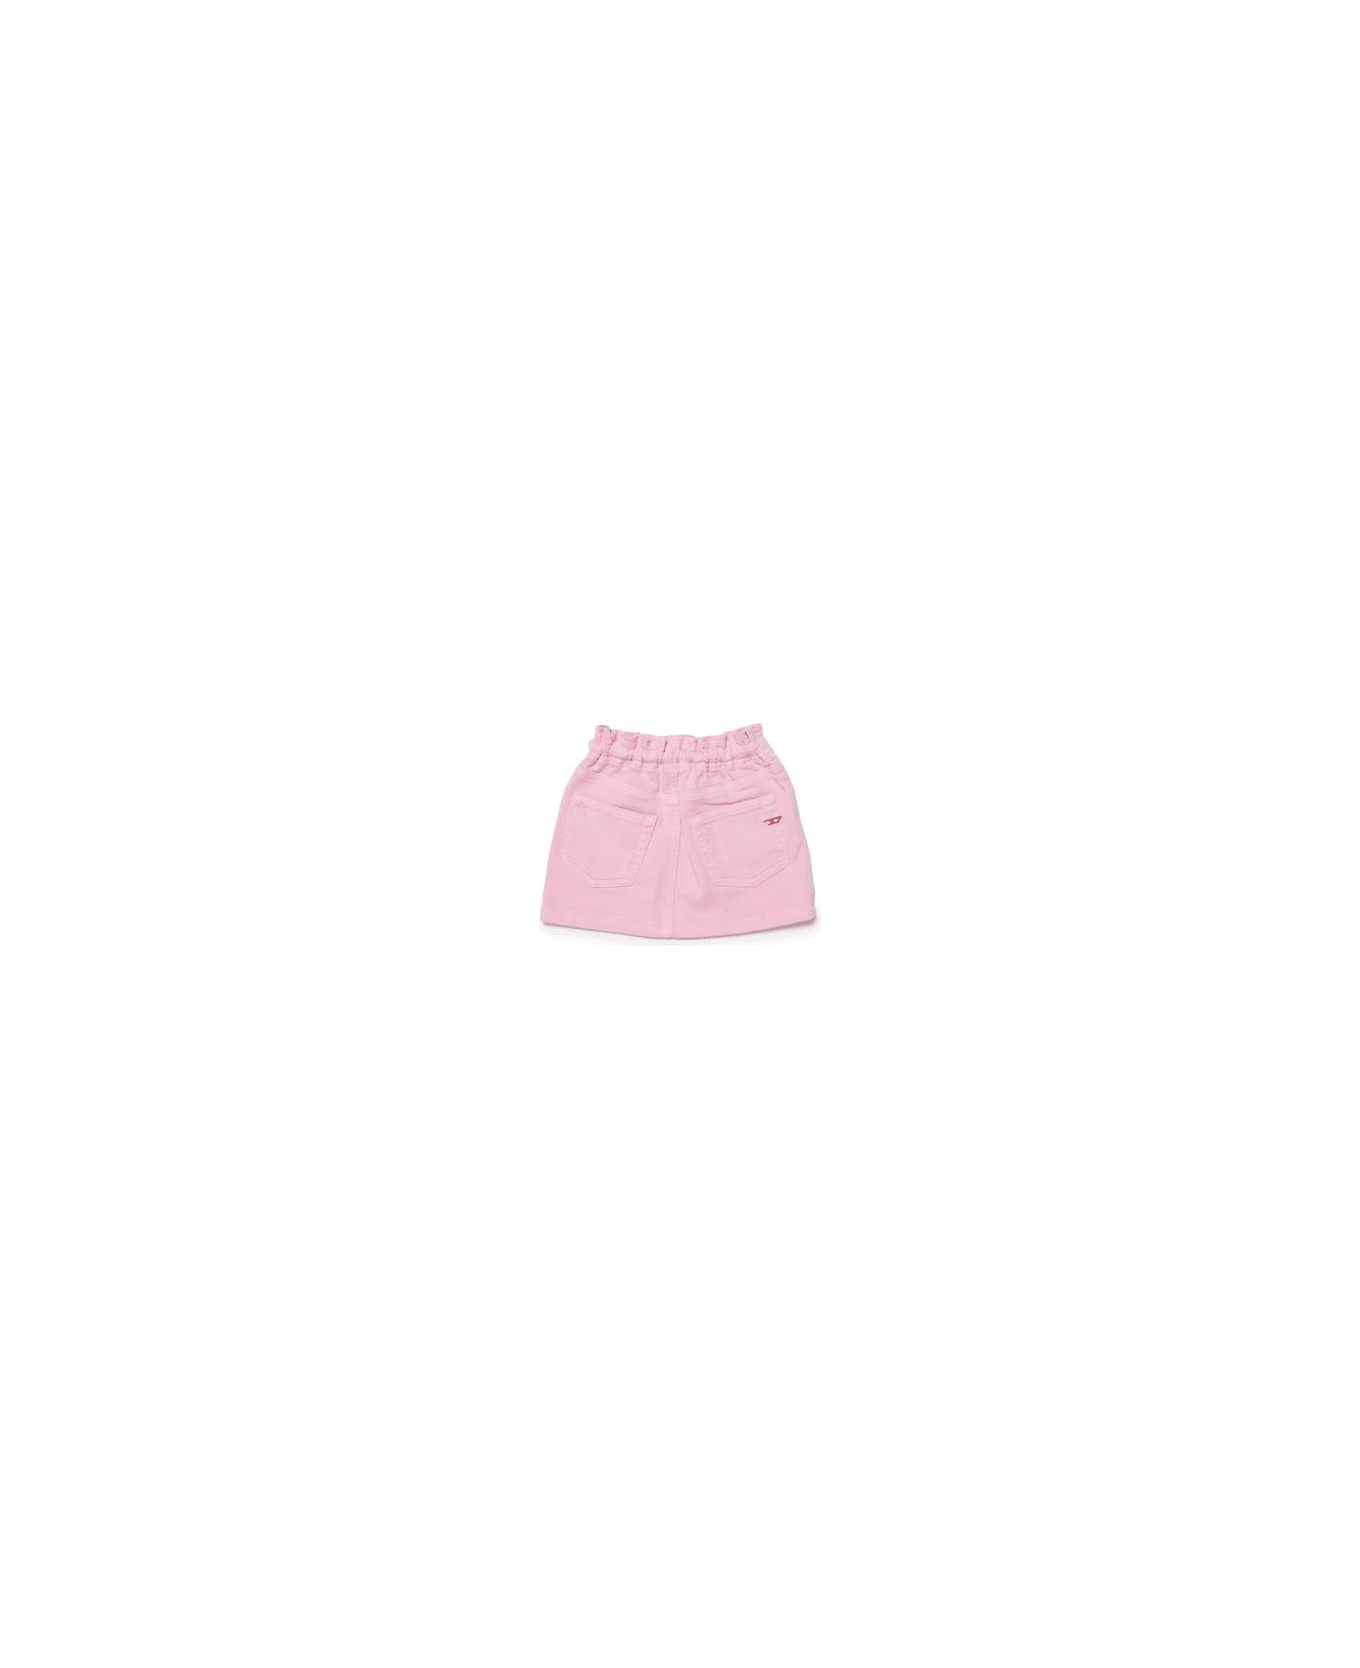 Diesel Gazib Jjj Skirt Diesel Pastel Pink Denim Skirt With Drawstrings - Pastel pink